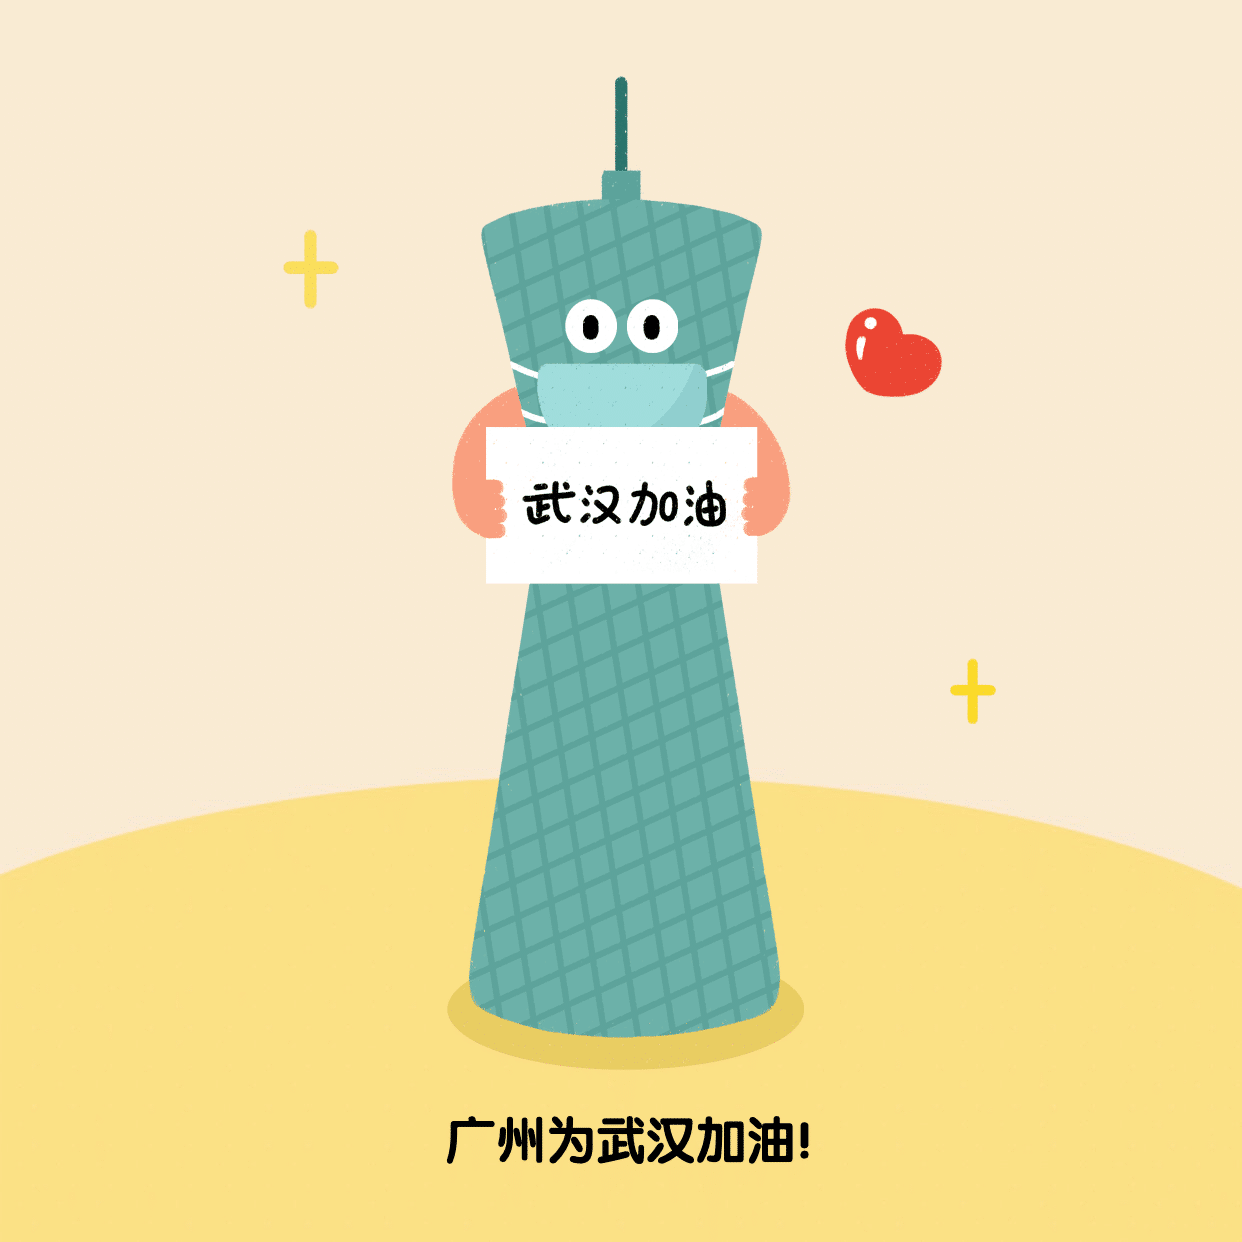 广州为武汉加油肺炎疫情方形海报预览效果